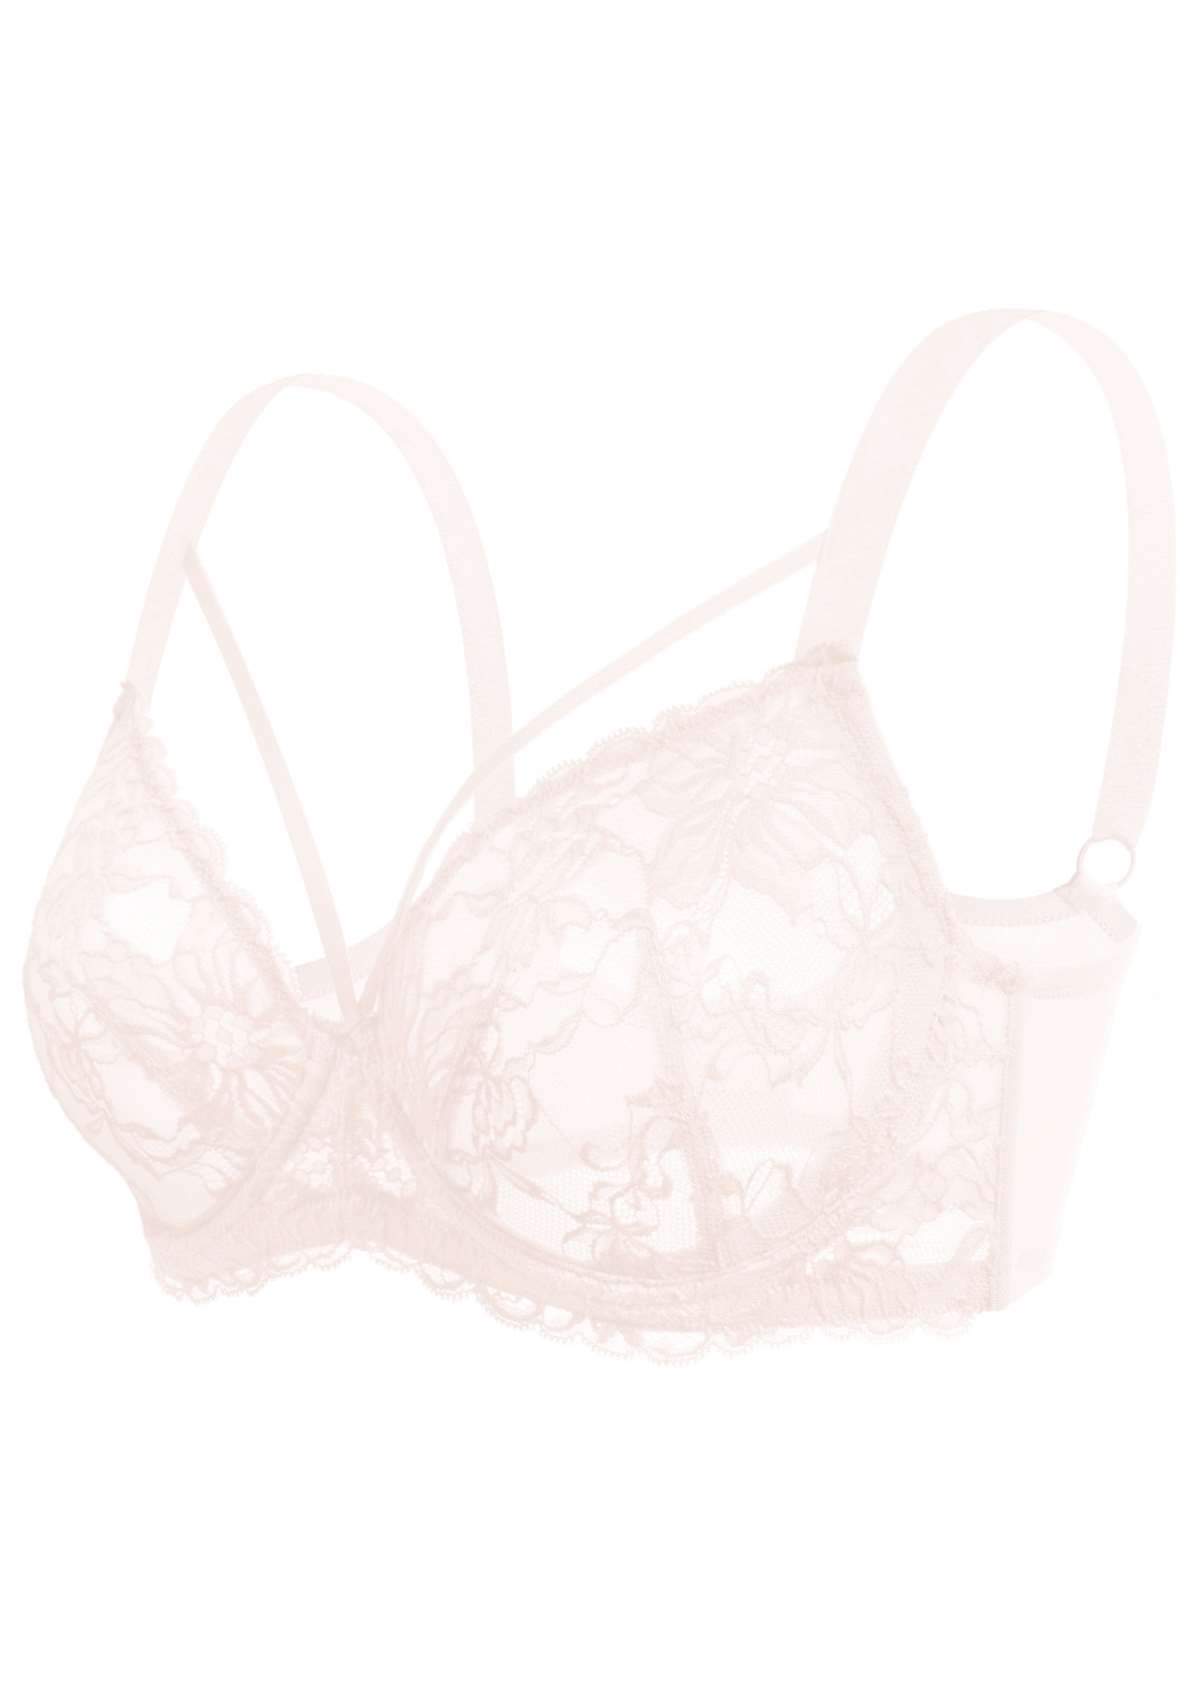 HSIA Pretty In Petals Underwire Lace Bra: No Padding, Full Cup Bra - Dusty Peach / 38 / C